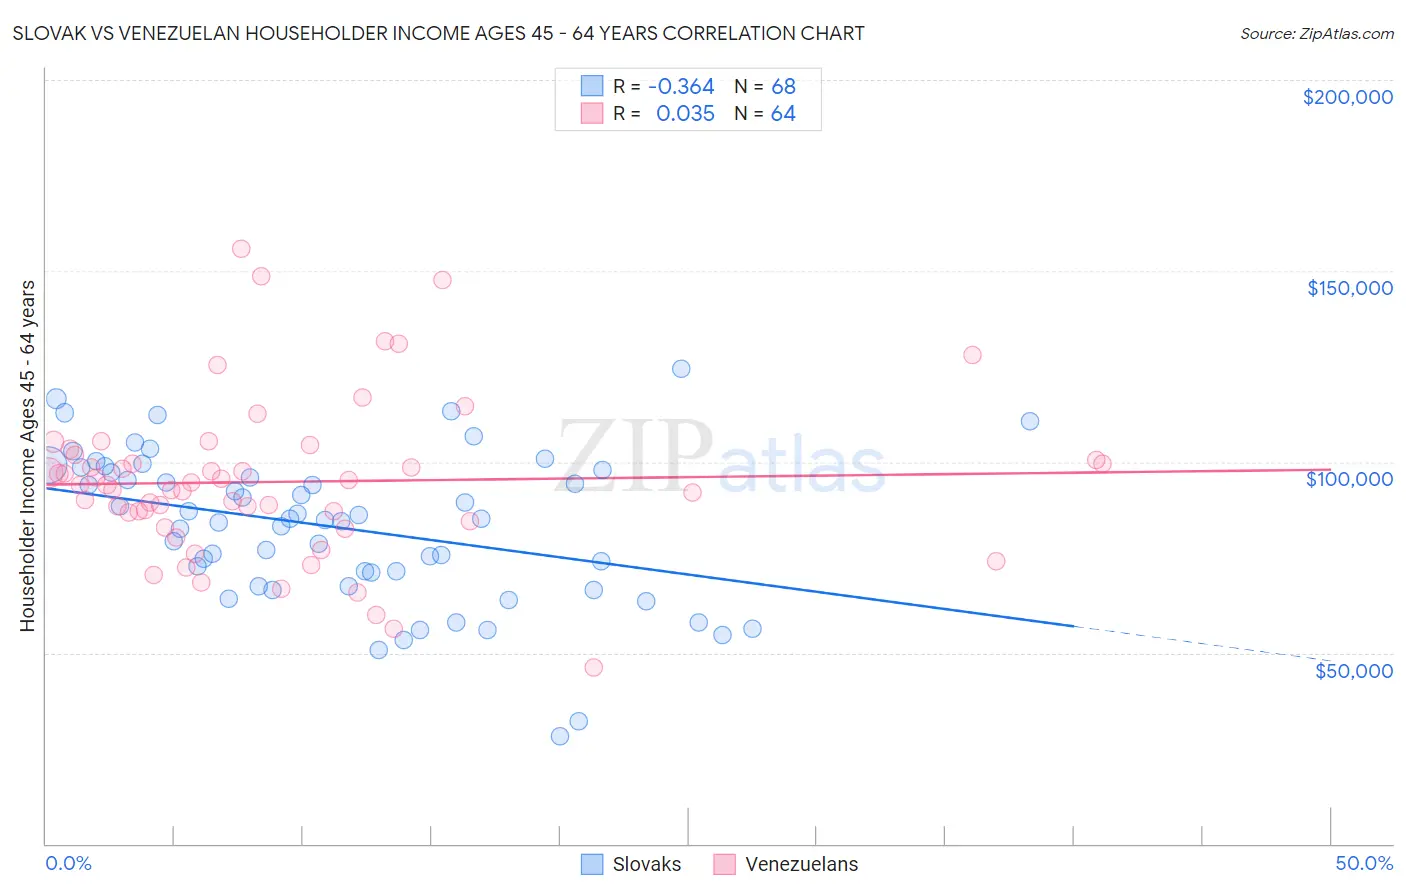 Slovak vs Venezuelan Householder Income Ages 45 - 64 years